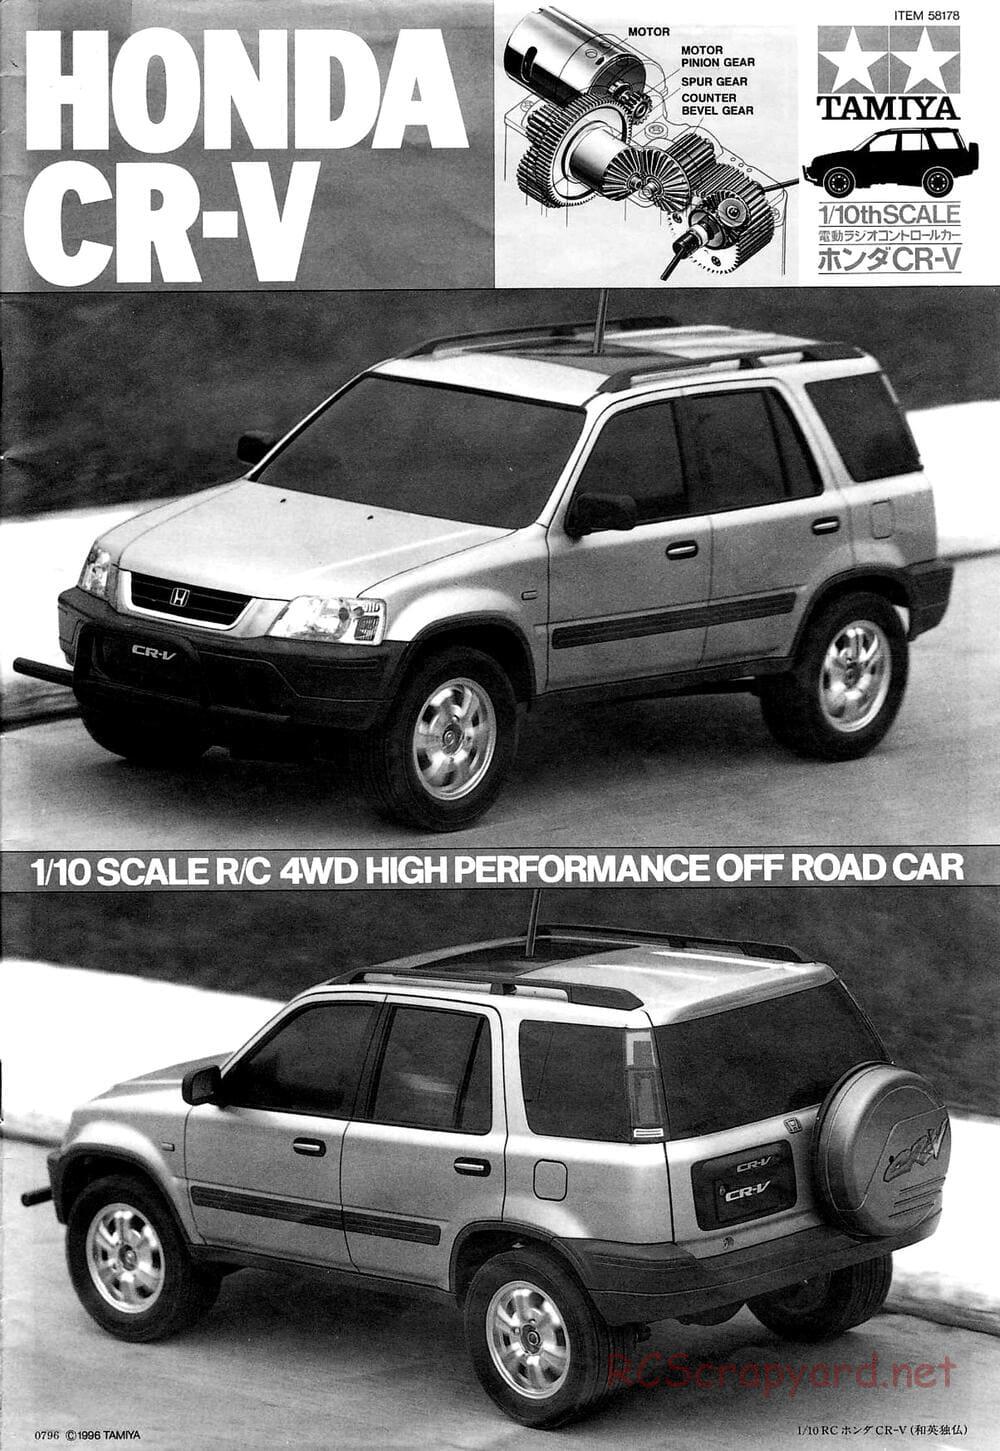 Tamiya - Honda CR-V - CC-01 Chassis - Manual - Page 1